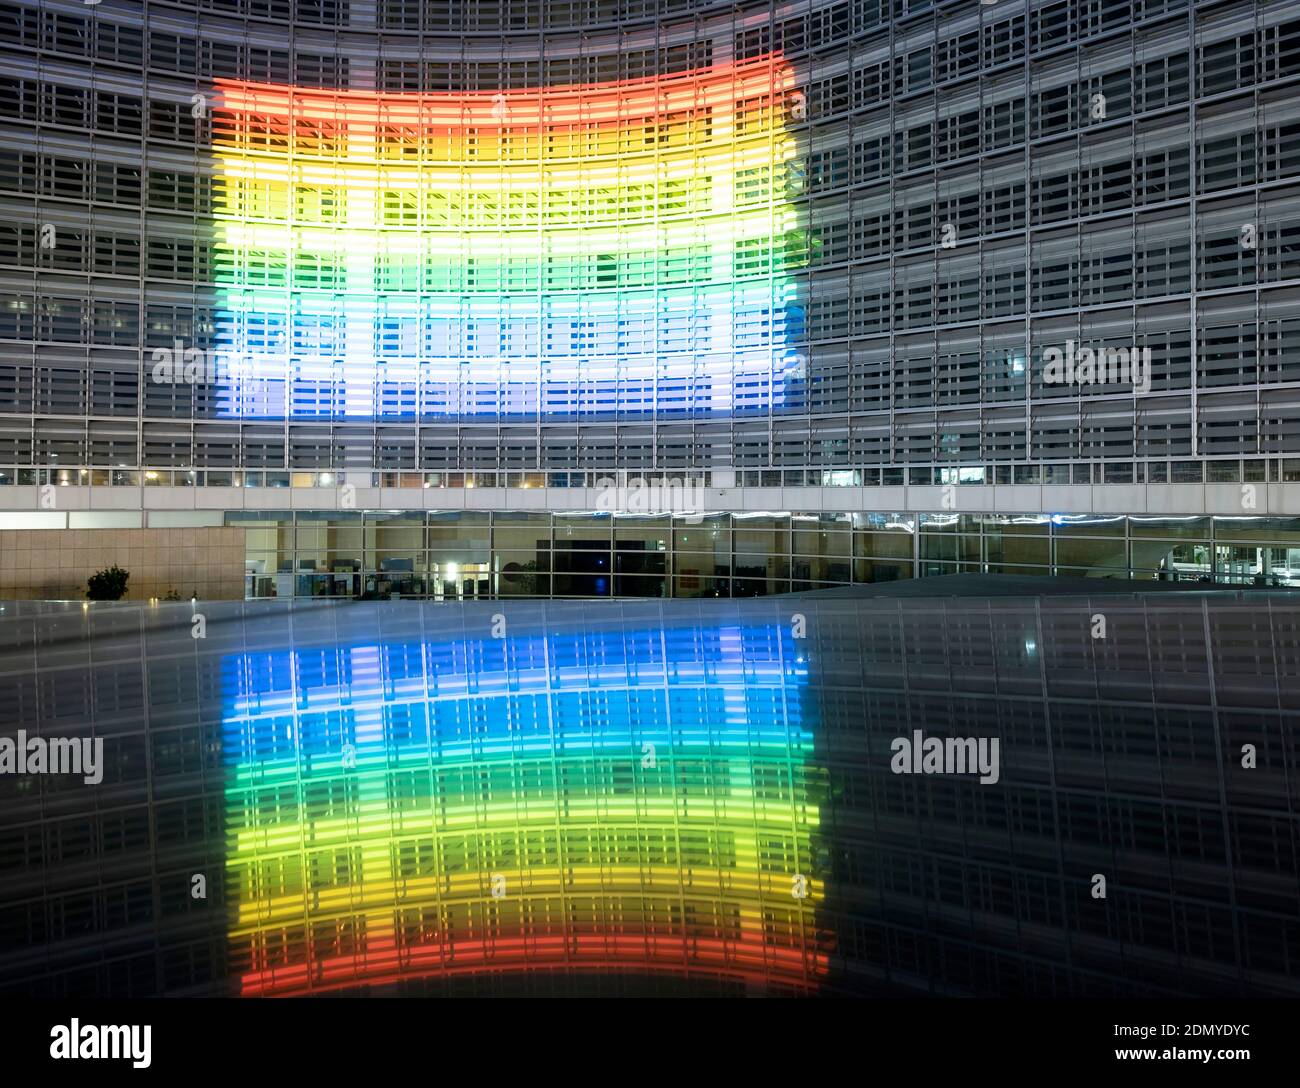 Belgio, Bruxelles: Bandiera arcobaleno sulla facciata del Berlaymont per celebrare la Giornata internazionale contro l'omofobia, la Transfhobia e la Bifobia Foto Stock